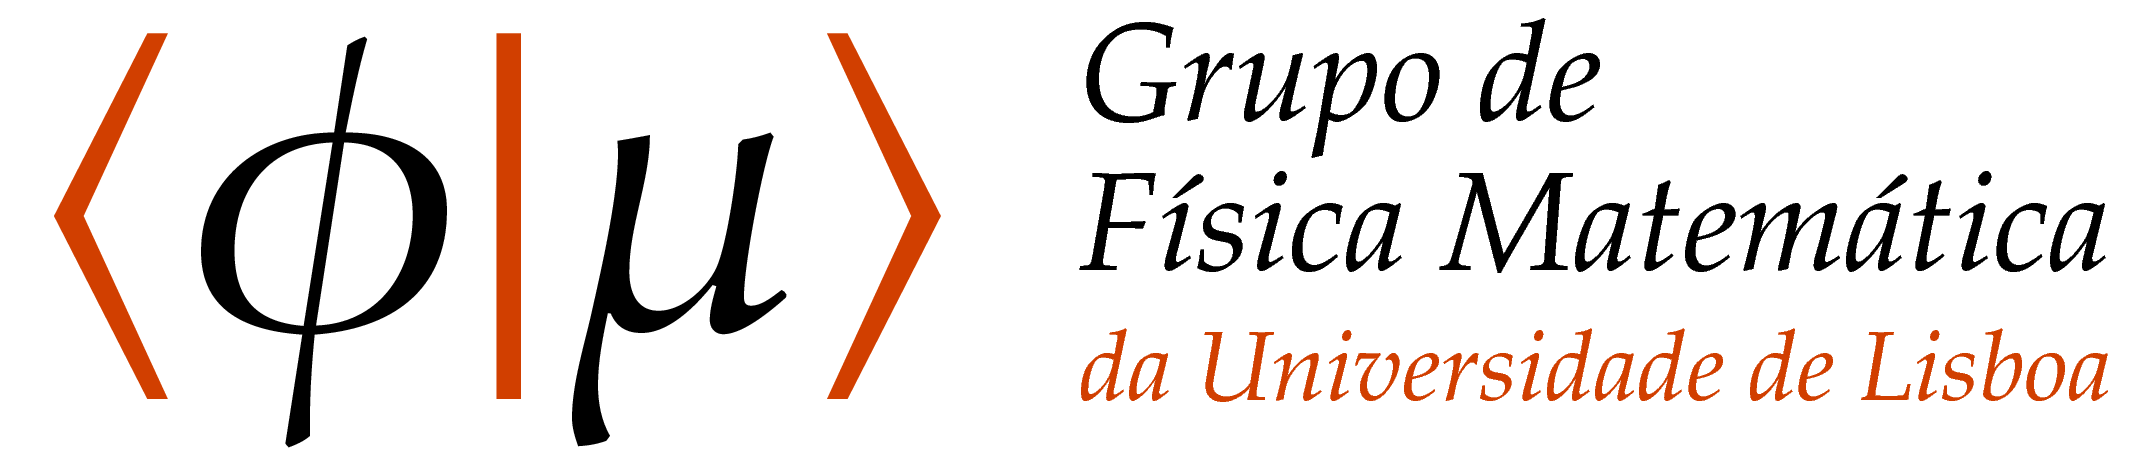 GFM logo: raster version